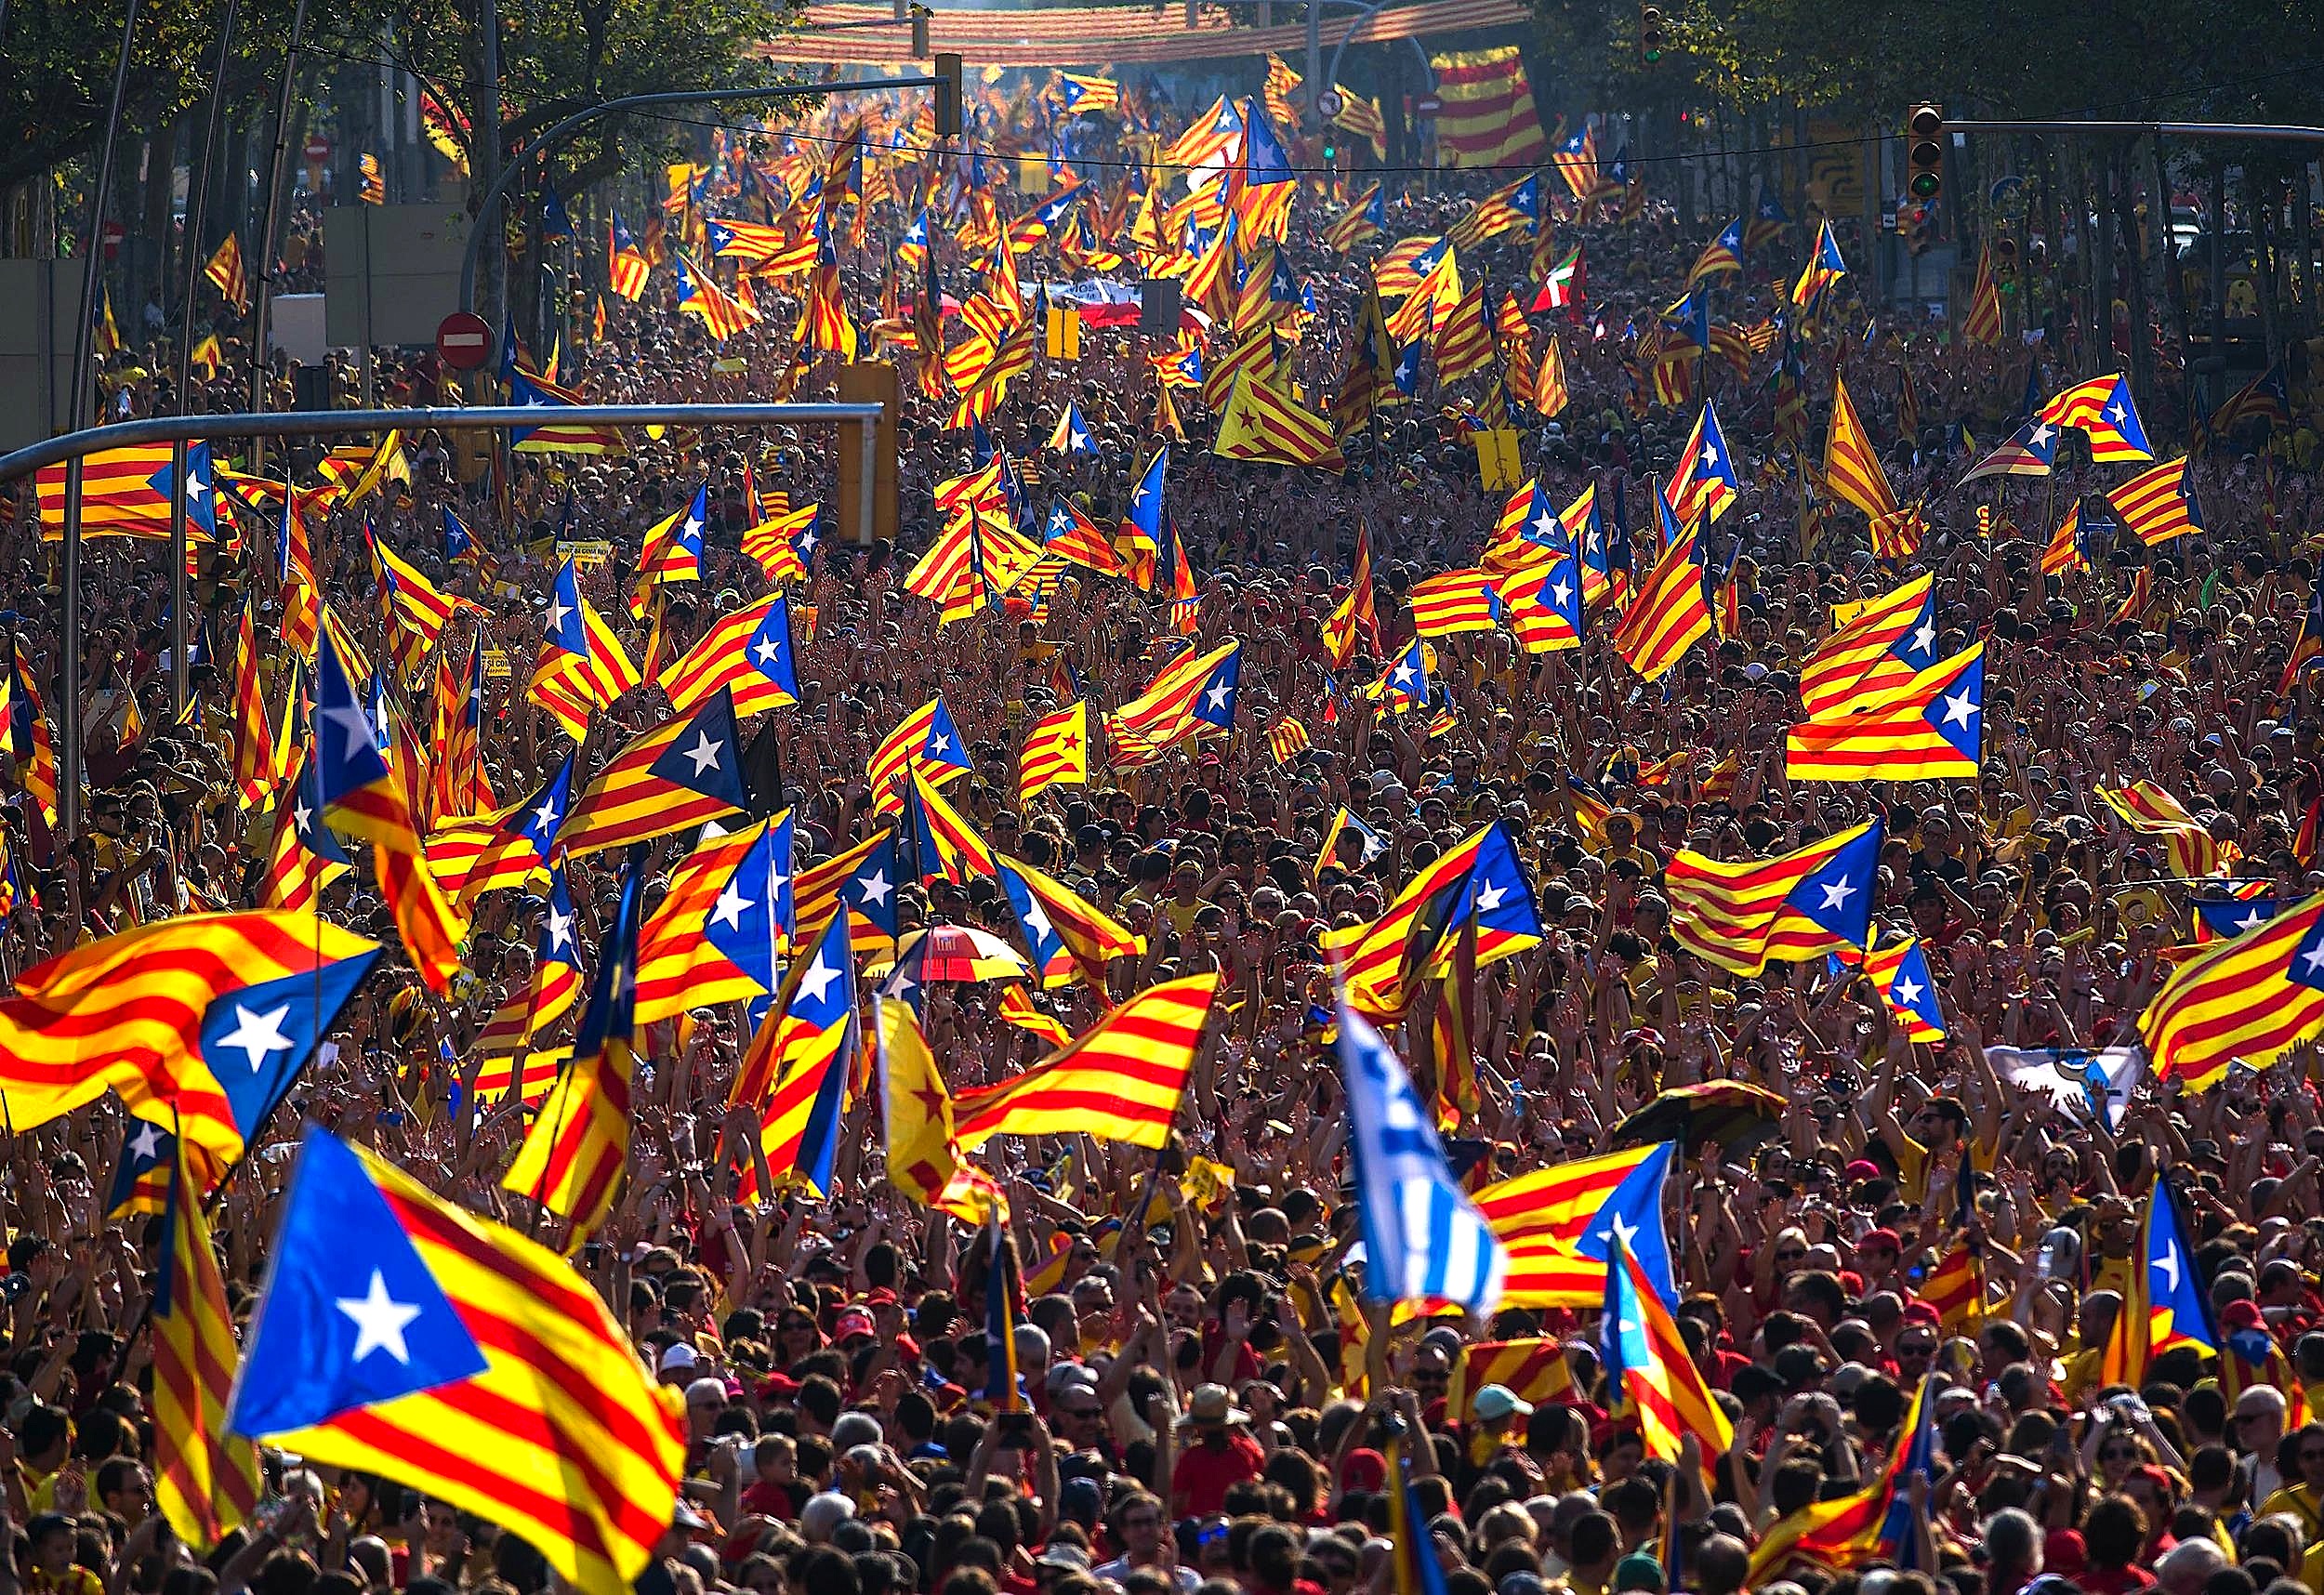 Είναι οριστικό: Δημοψήφισμα για την απόσχιση της Καταλονίας από την Ισπανία την 1η Οκτωβρίου